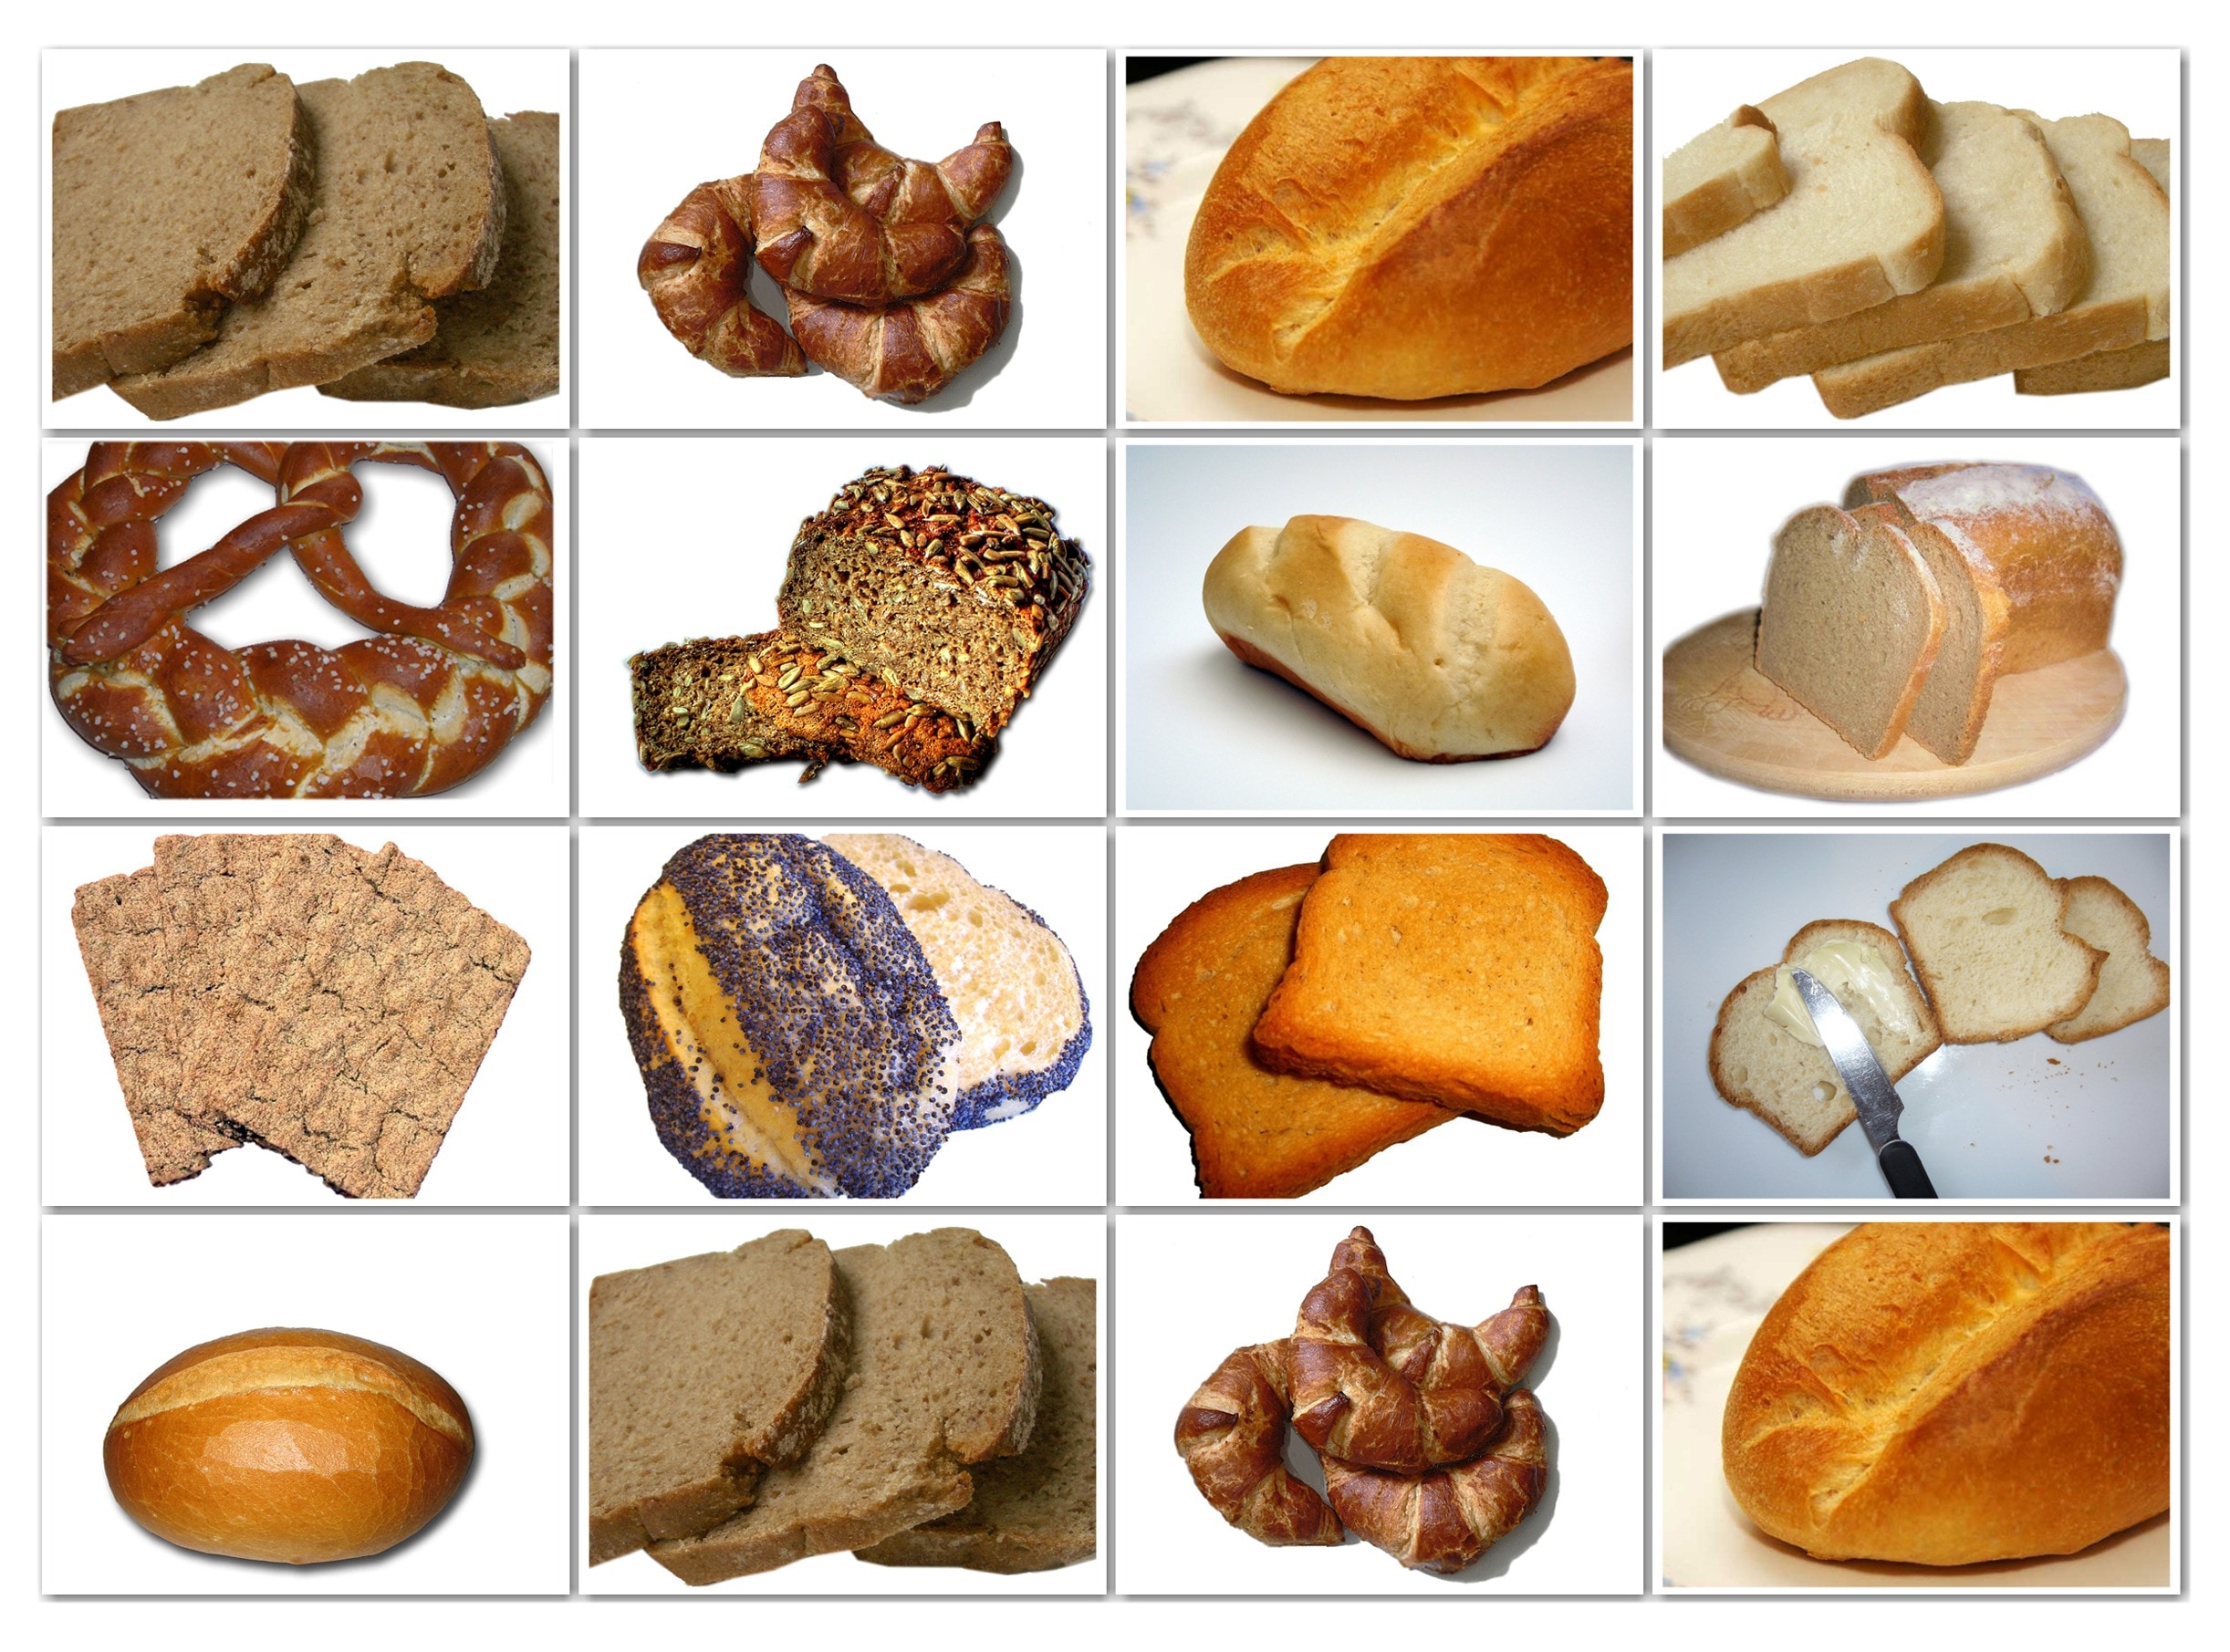 variety of bread